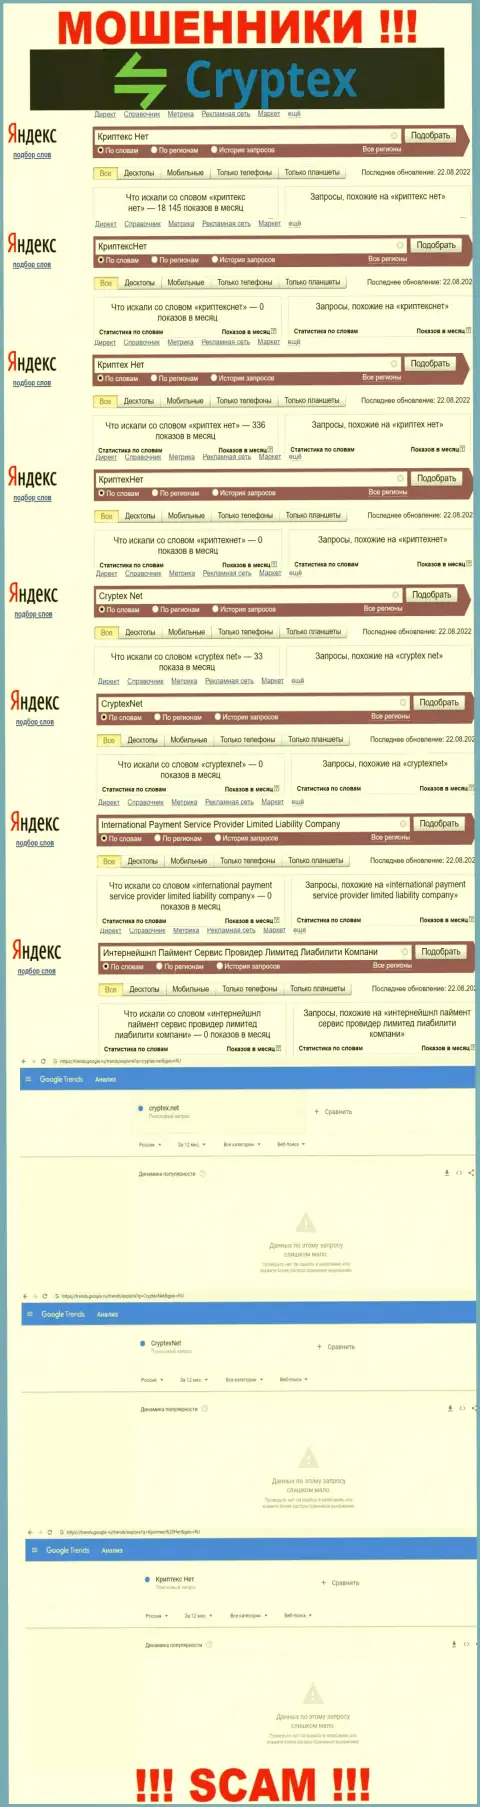 Скриншот итогов запросов по противоправно действующей конторе Криптекс Нет